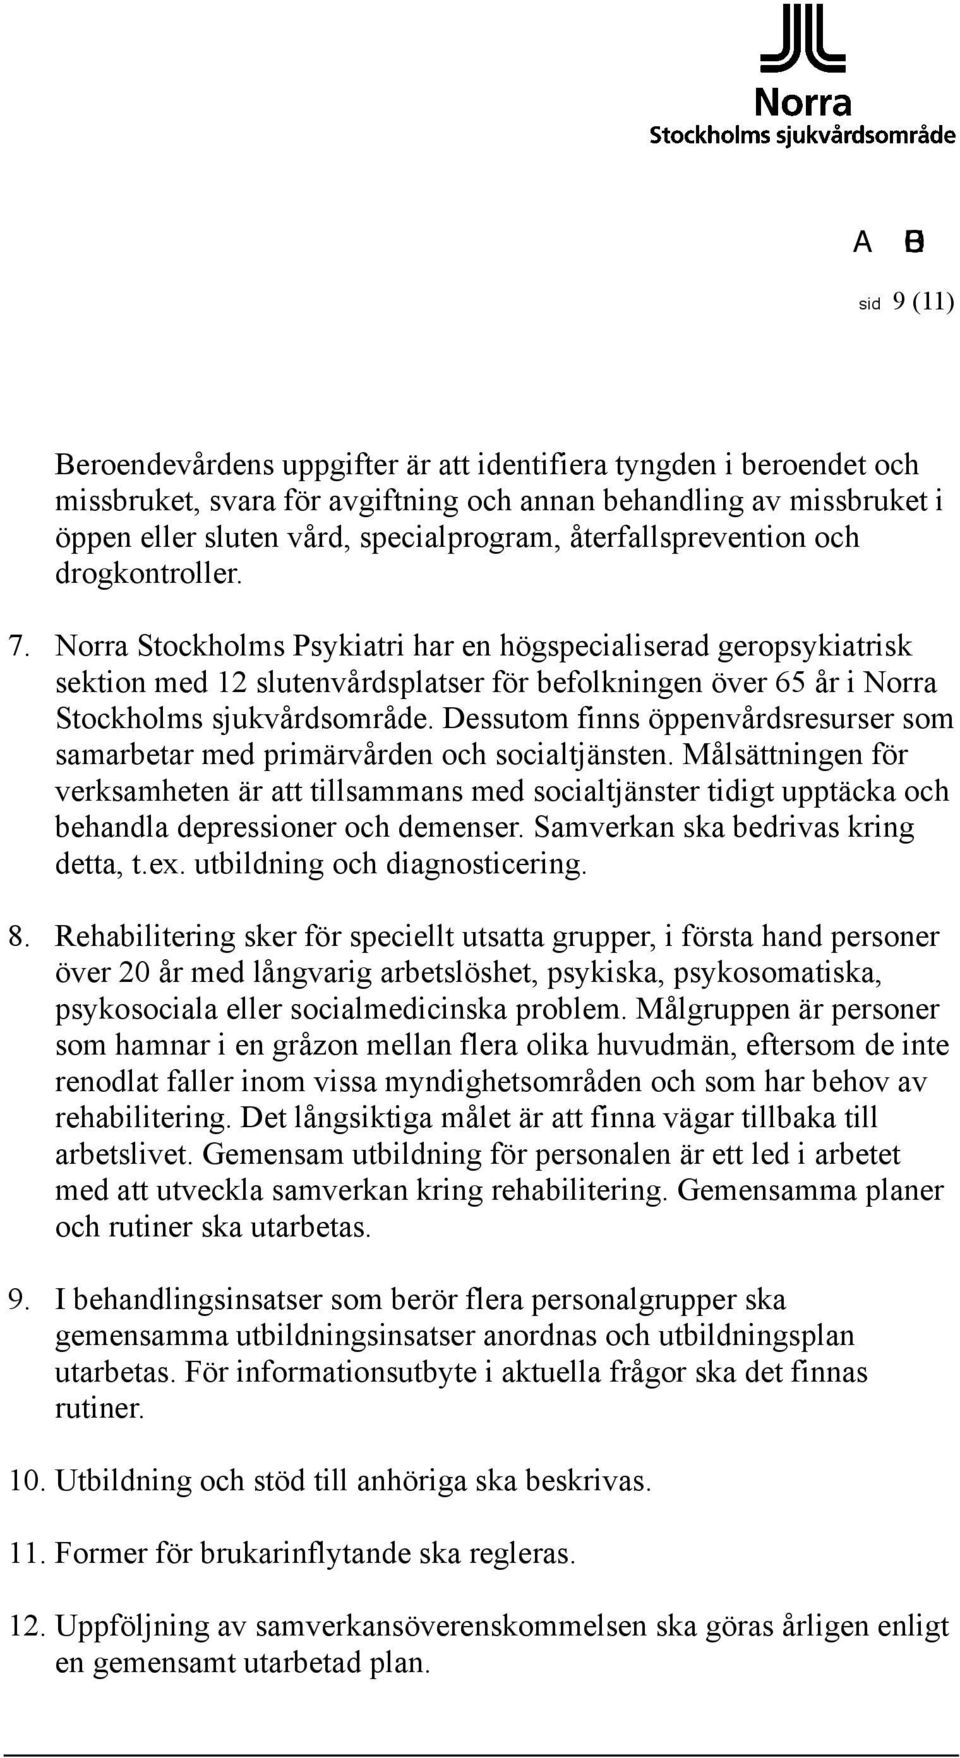 Norra Stockholms Psykiatri har en högspecialiserad geropsykiatrisk sektion med 12 slutenvårdsplatser för befolkningen över 65 år i Norra Stockholms sjukvårdsområde.